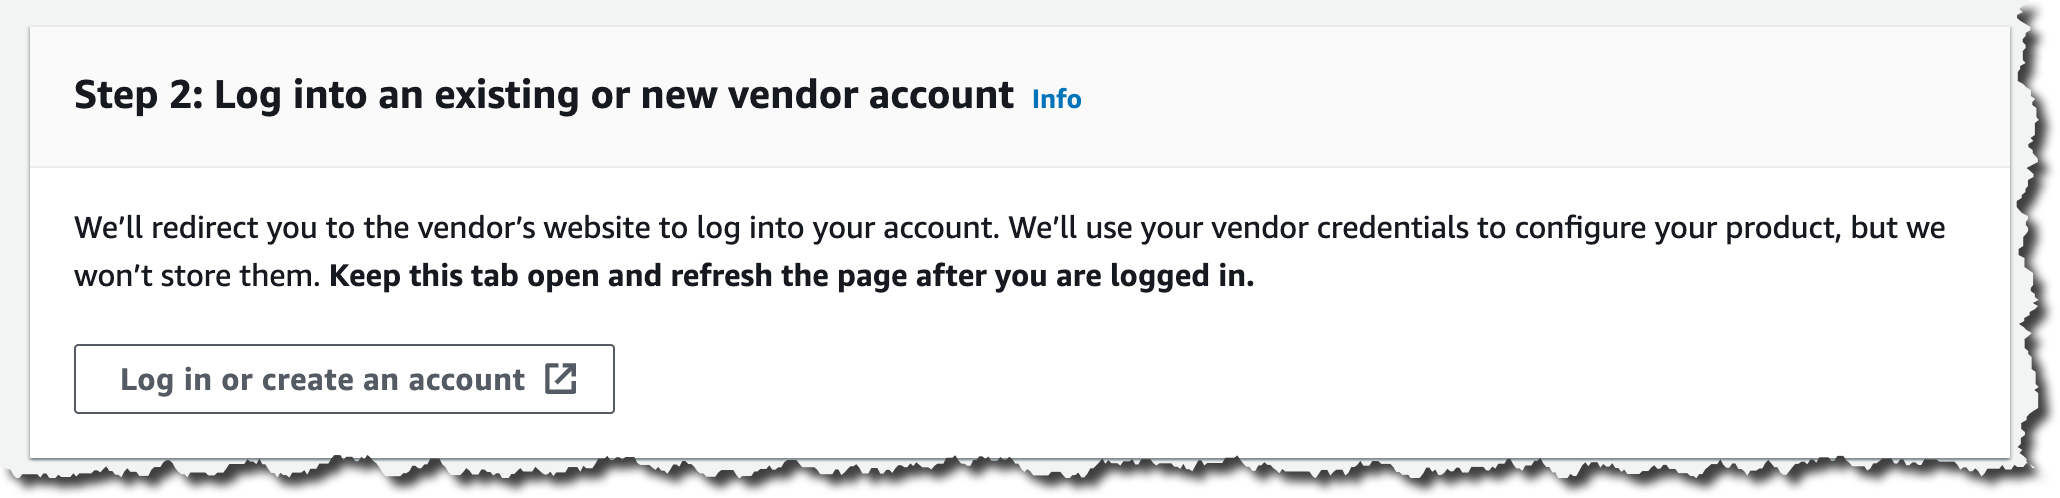 Step 2 - Log into the vendor account